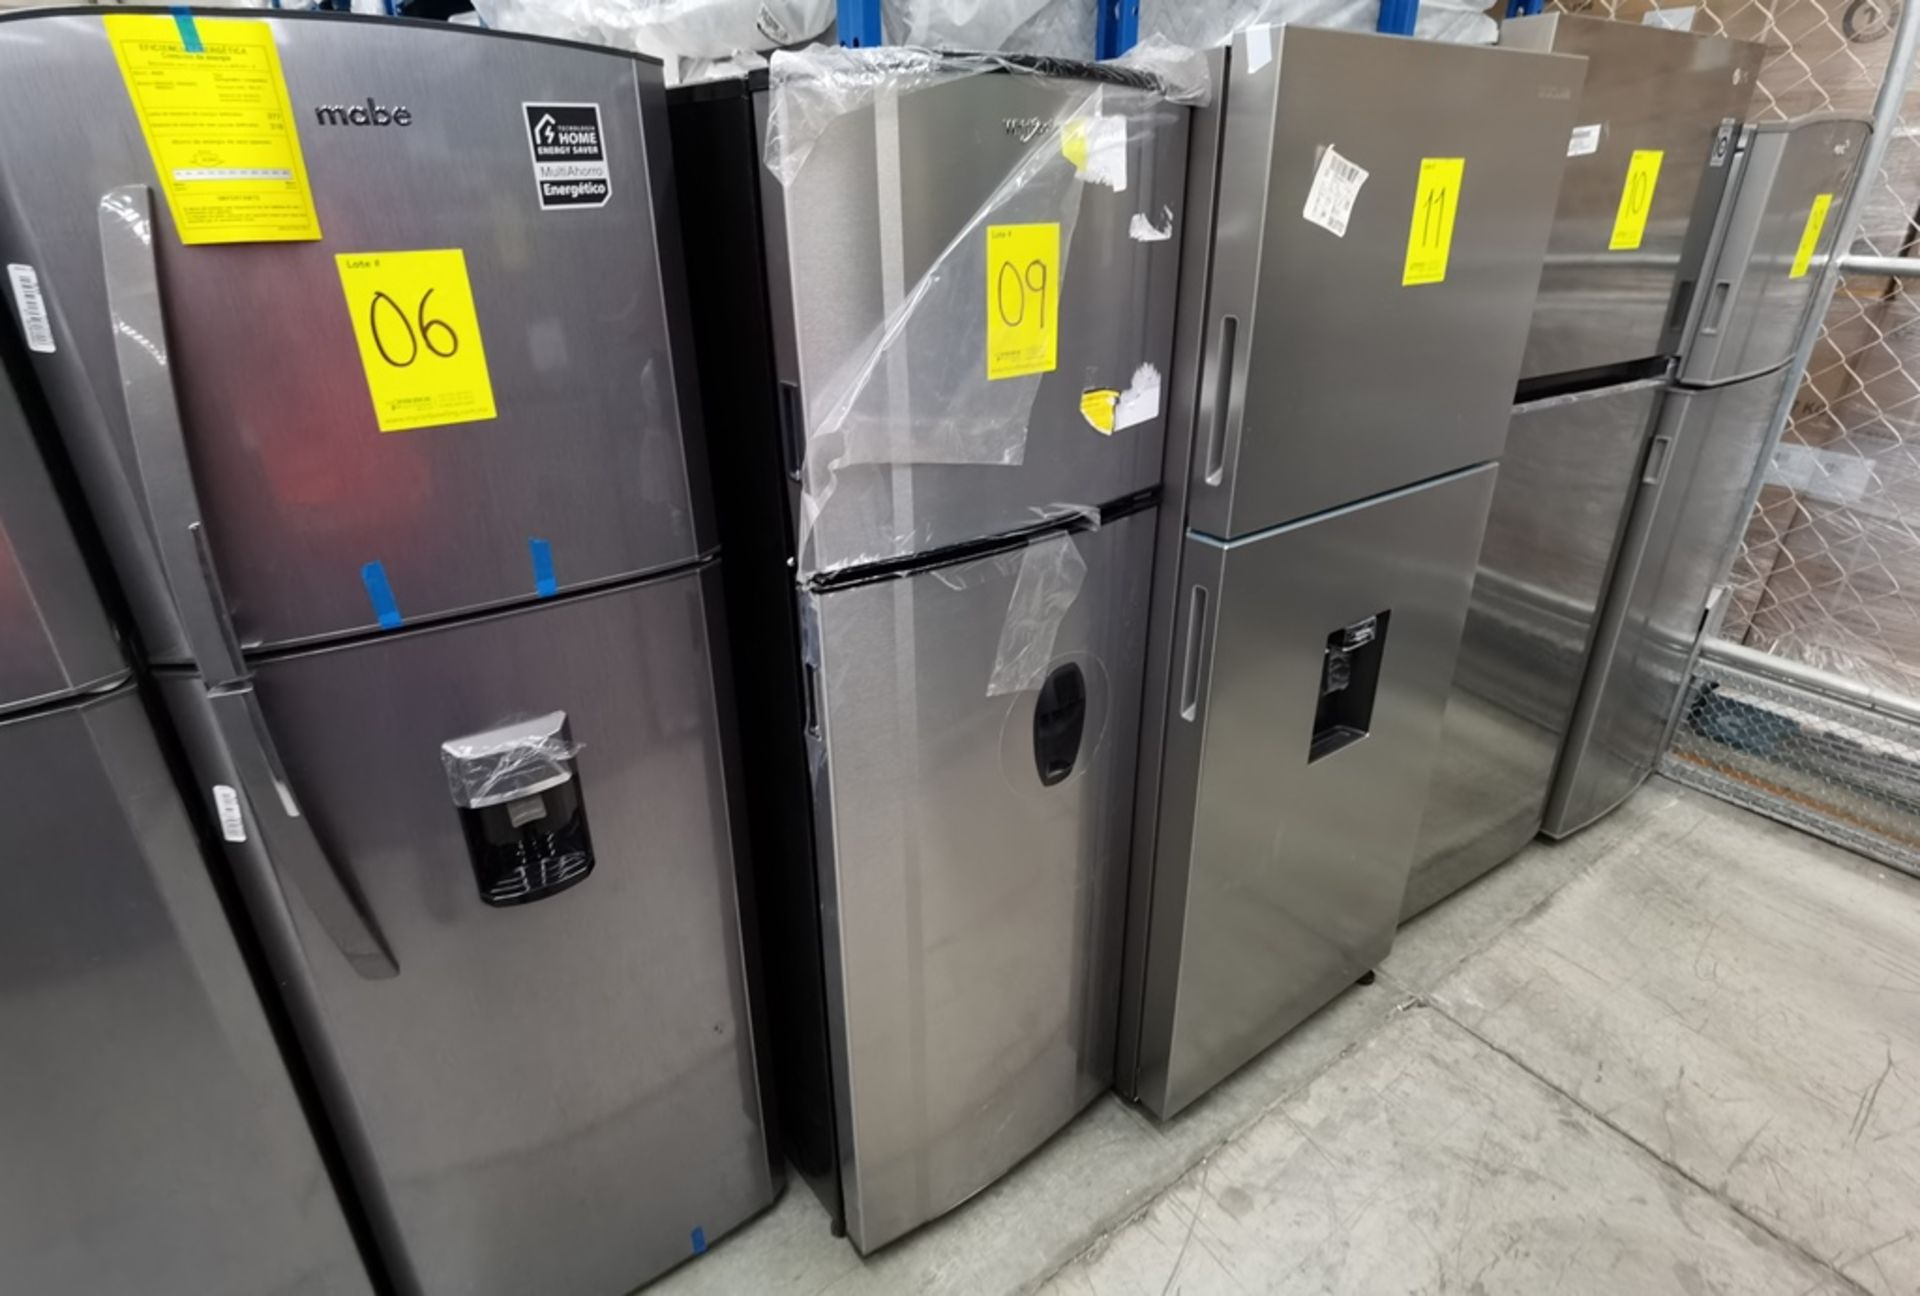 Lote De 2 Refrigeradores Contiene: 1 Refrigerador Marca Across, Modelo AT9007G03, Serie VRB1230980, - Image 10 of 16